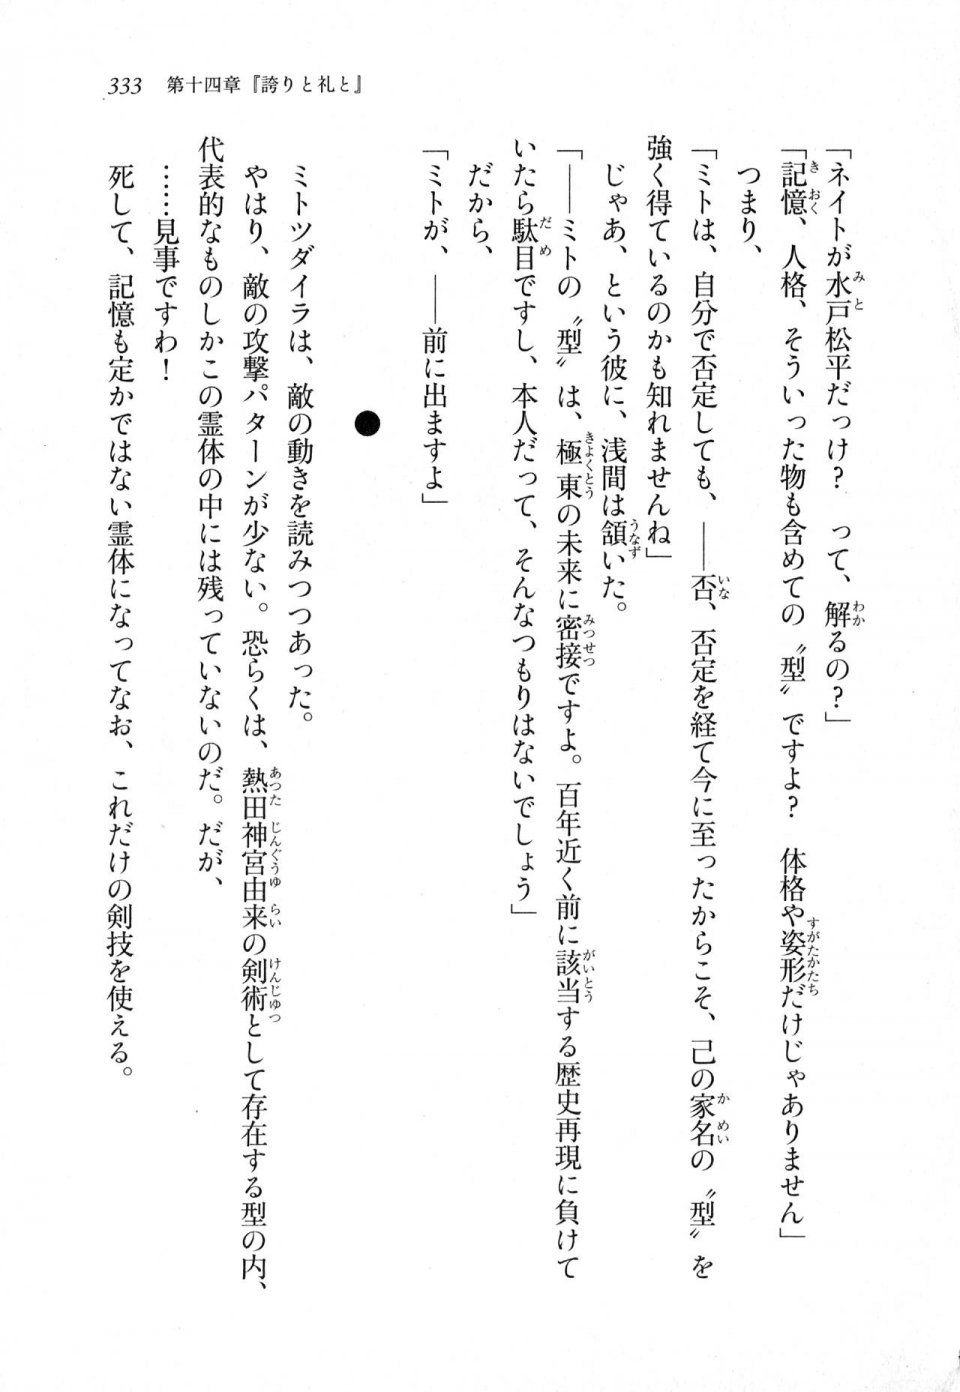 Kyoukai Senjou no Horizon LN Sidestory Vol 1 - Photo #331